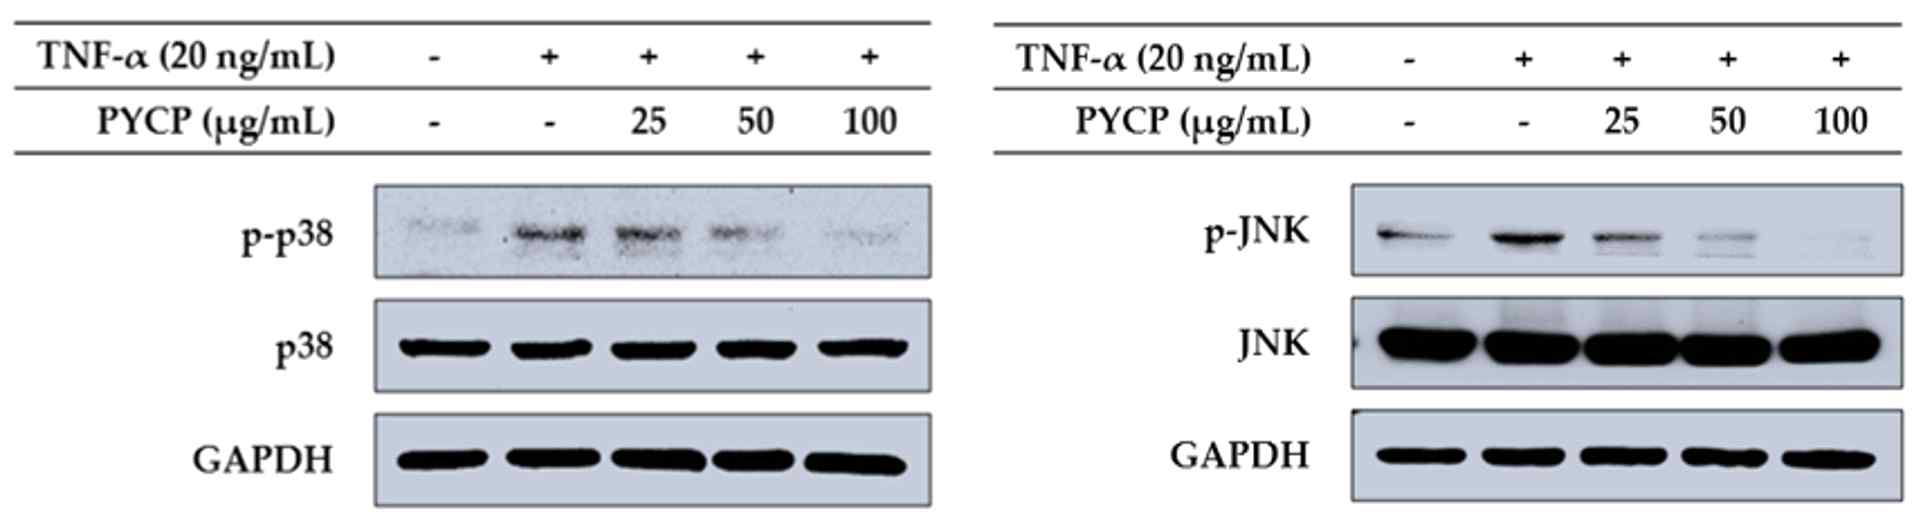 TNF-α에 의해 증가된 p38 및 JNK의 인산화 수준이 방사무늬김 단백질의 처리에 의해 감소하였다